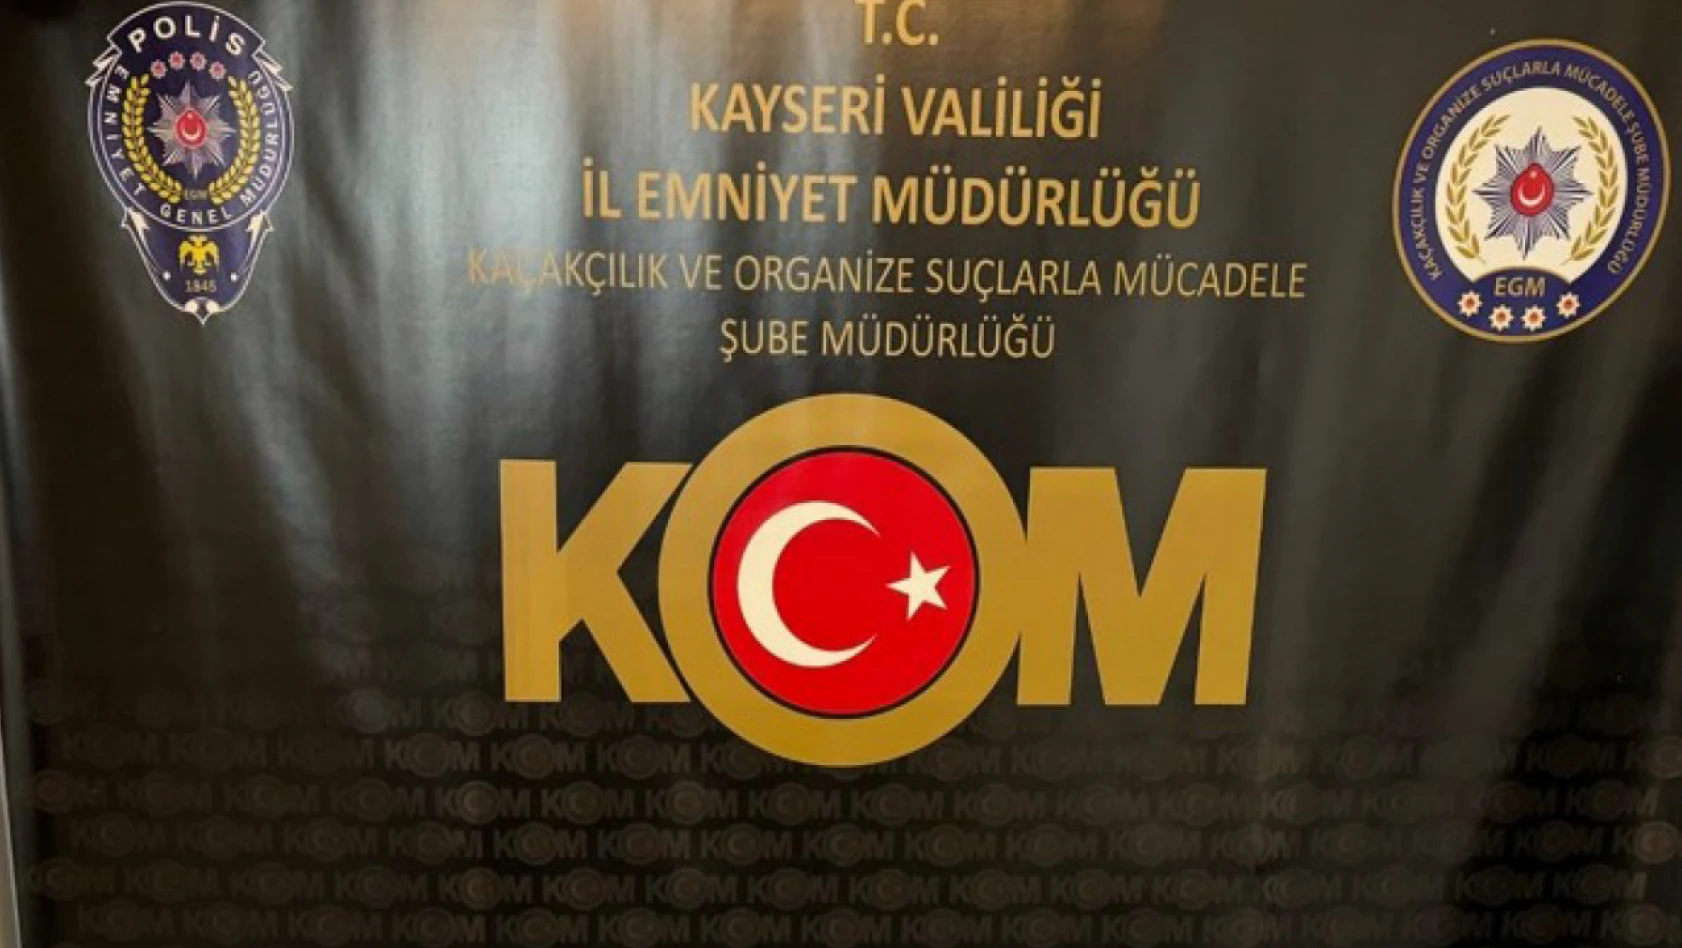 Kayseri'de Sahte Para Operasyonu! - Bakın Kaç Bin TL Yakalandı?